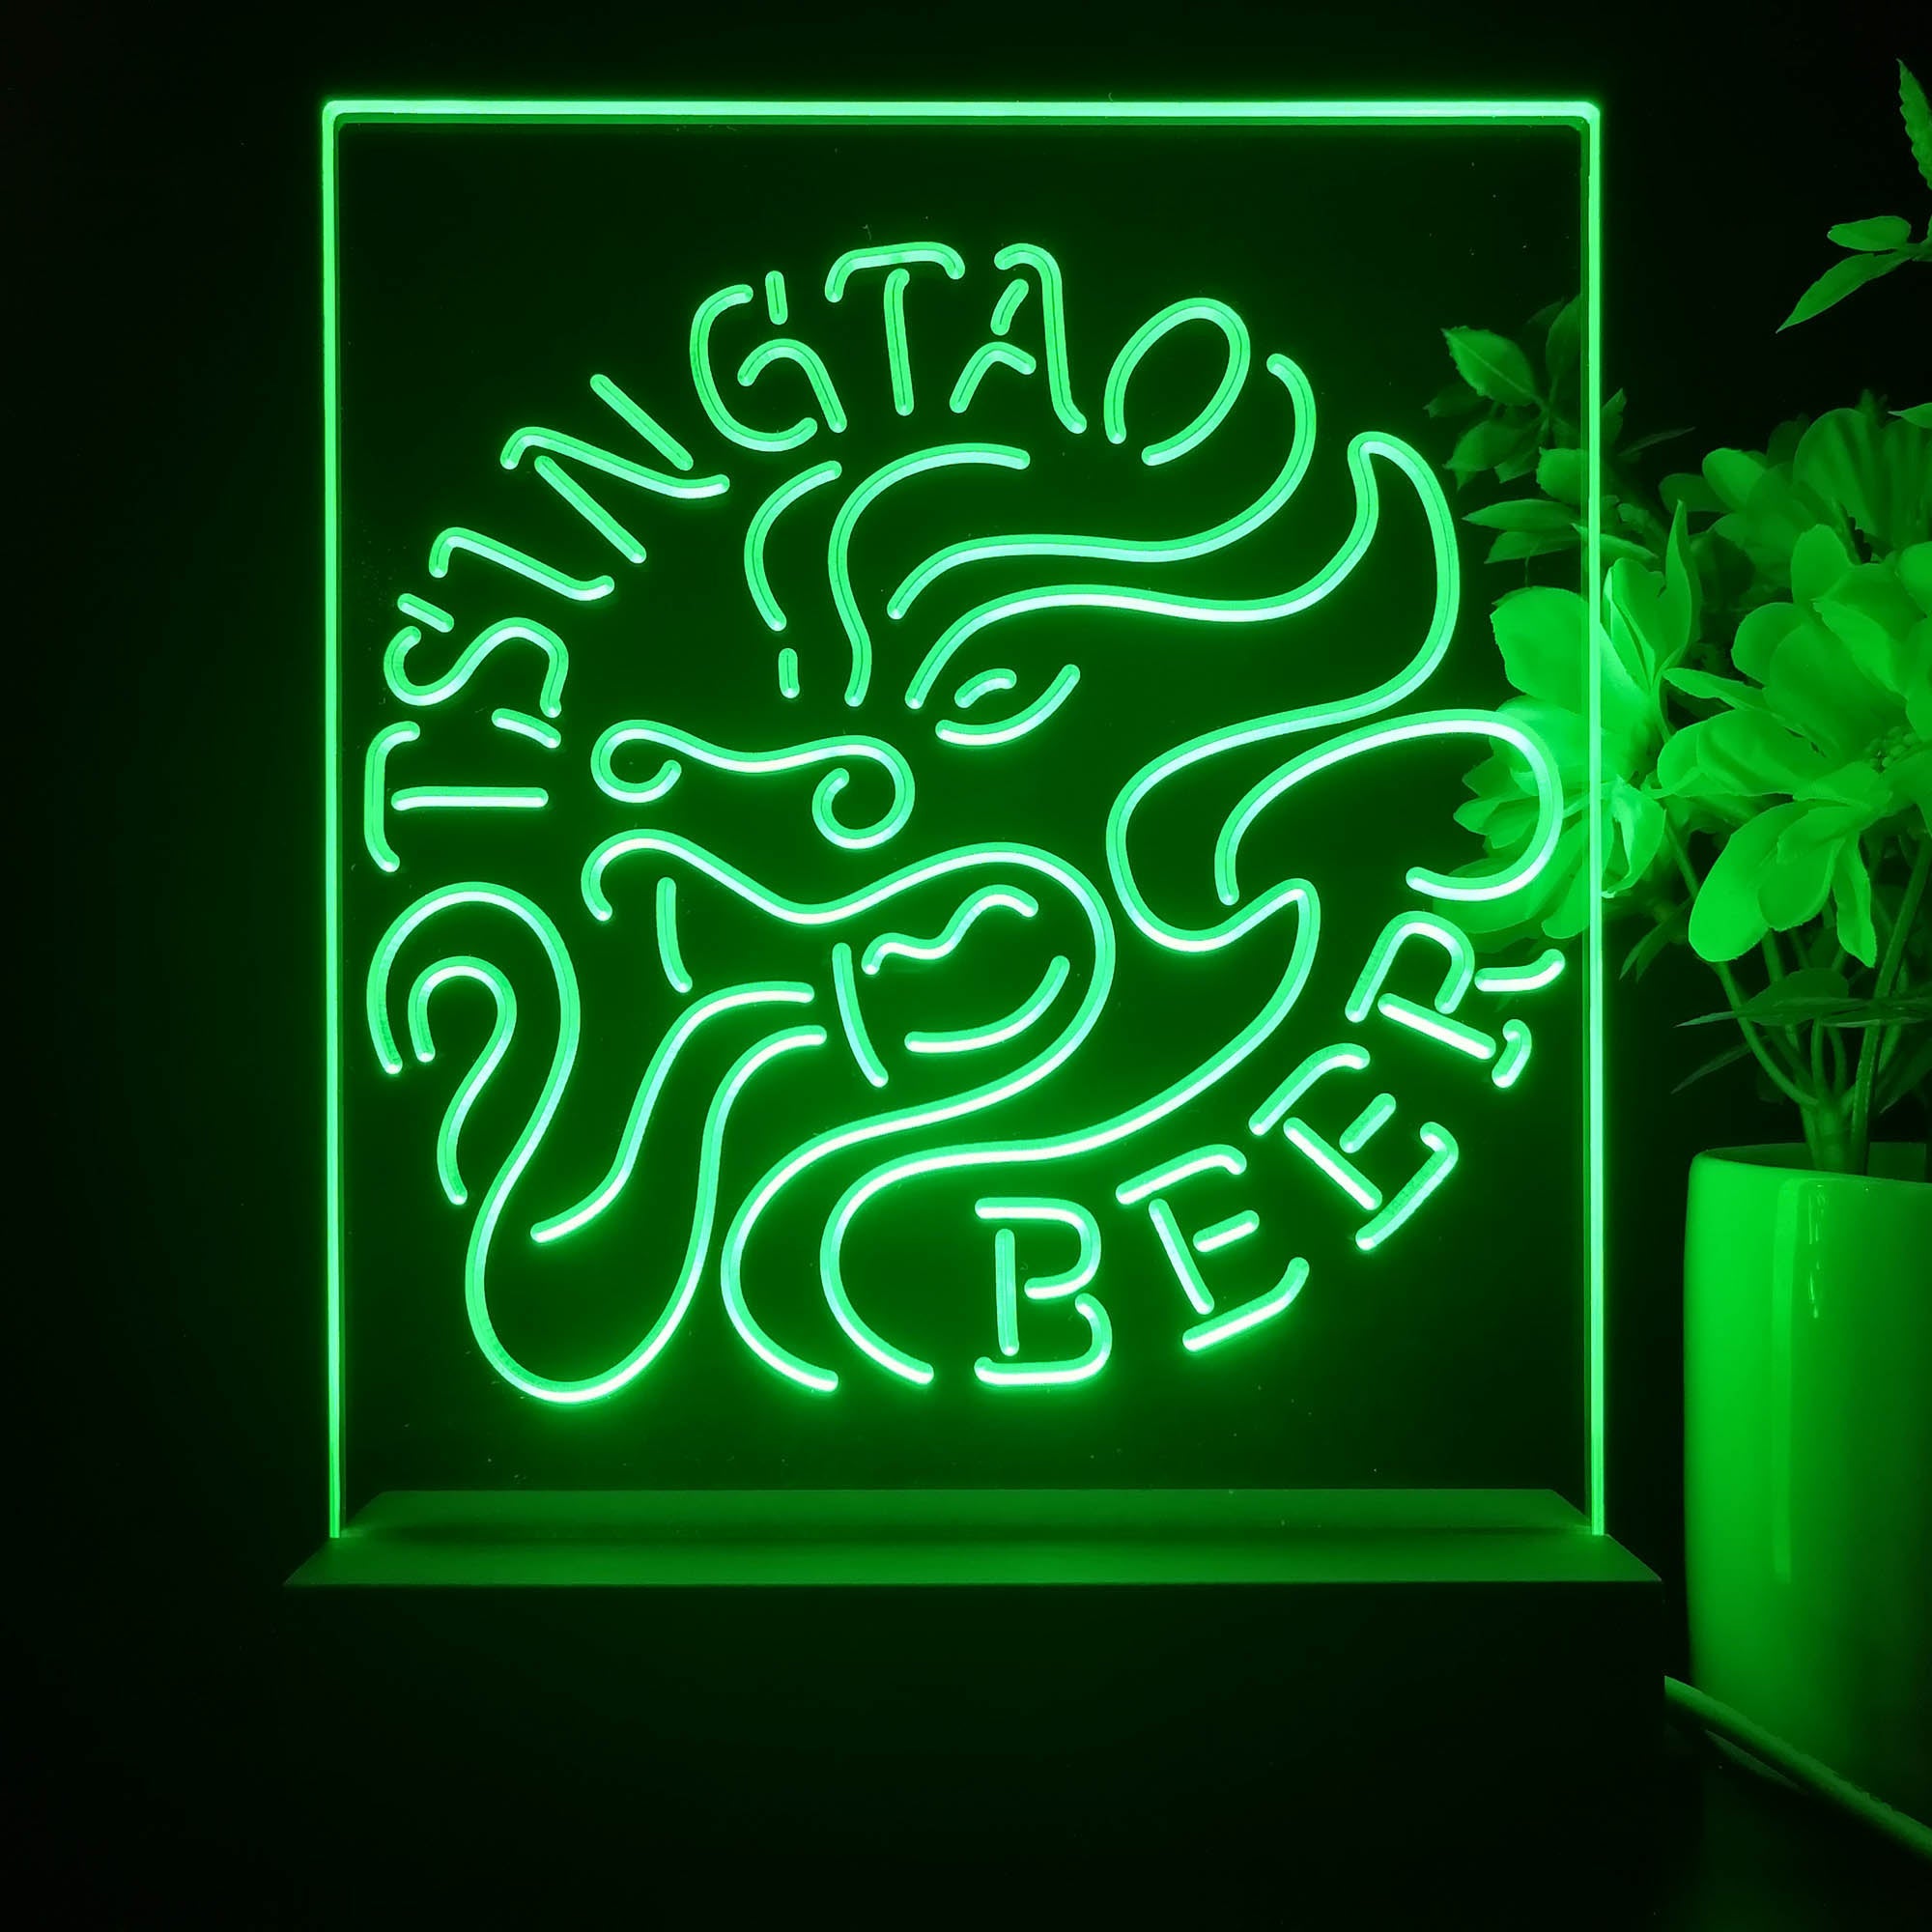 Tsingtao Beer Dragon Man Cave 3D Illusion Night Light Desk Lamp